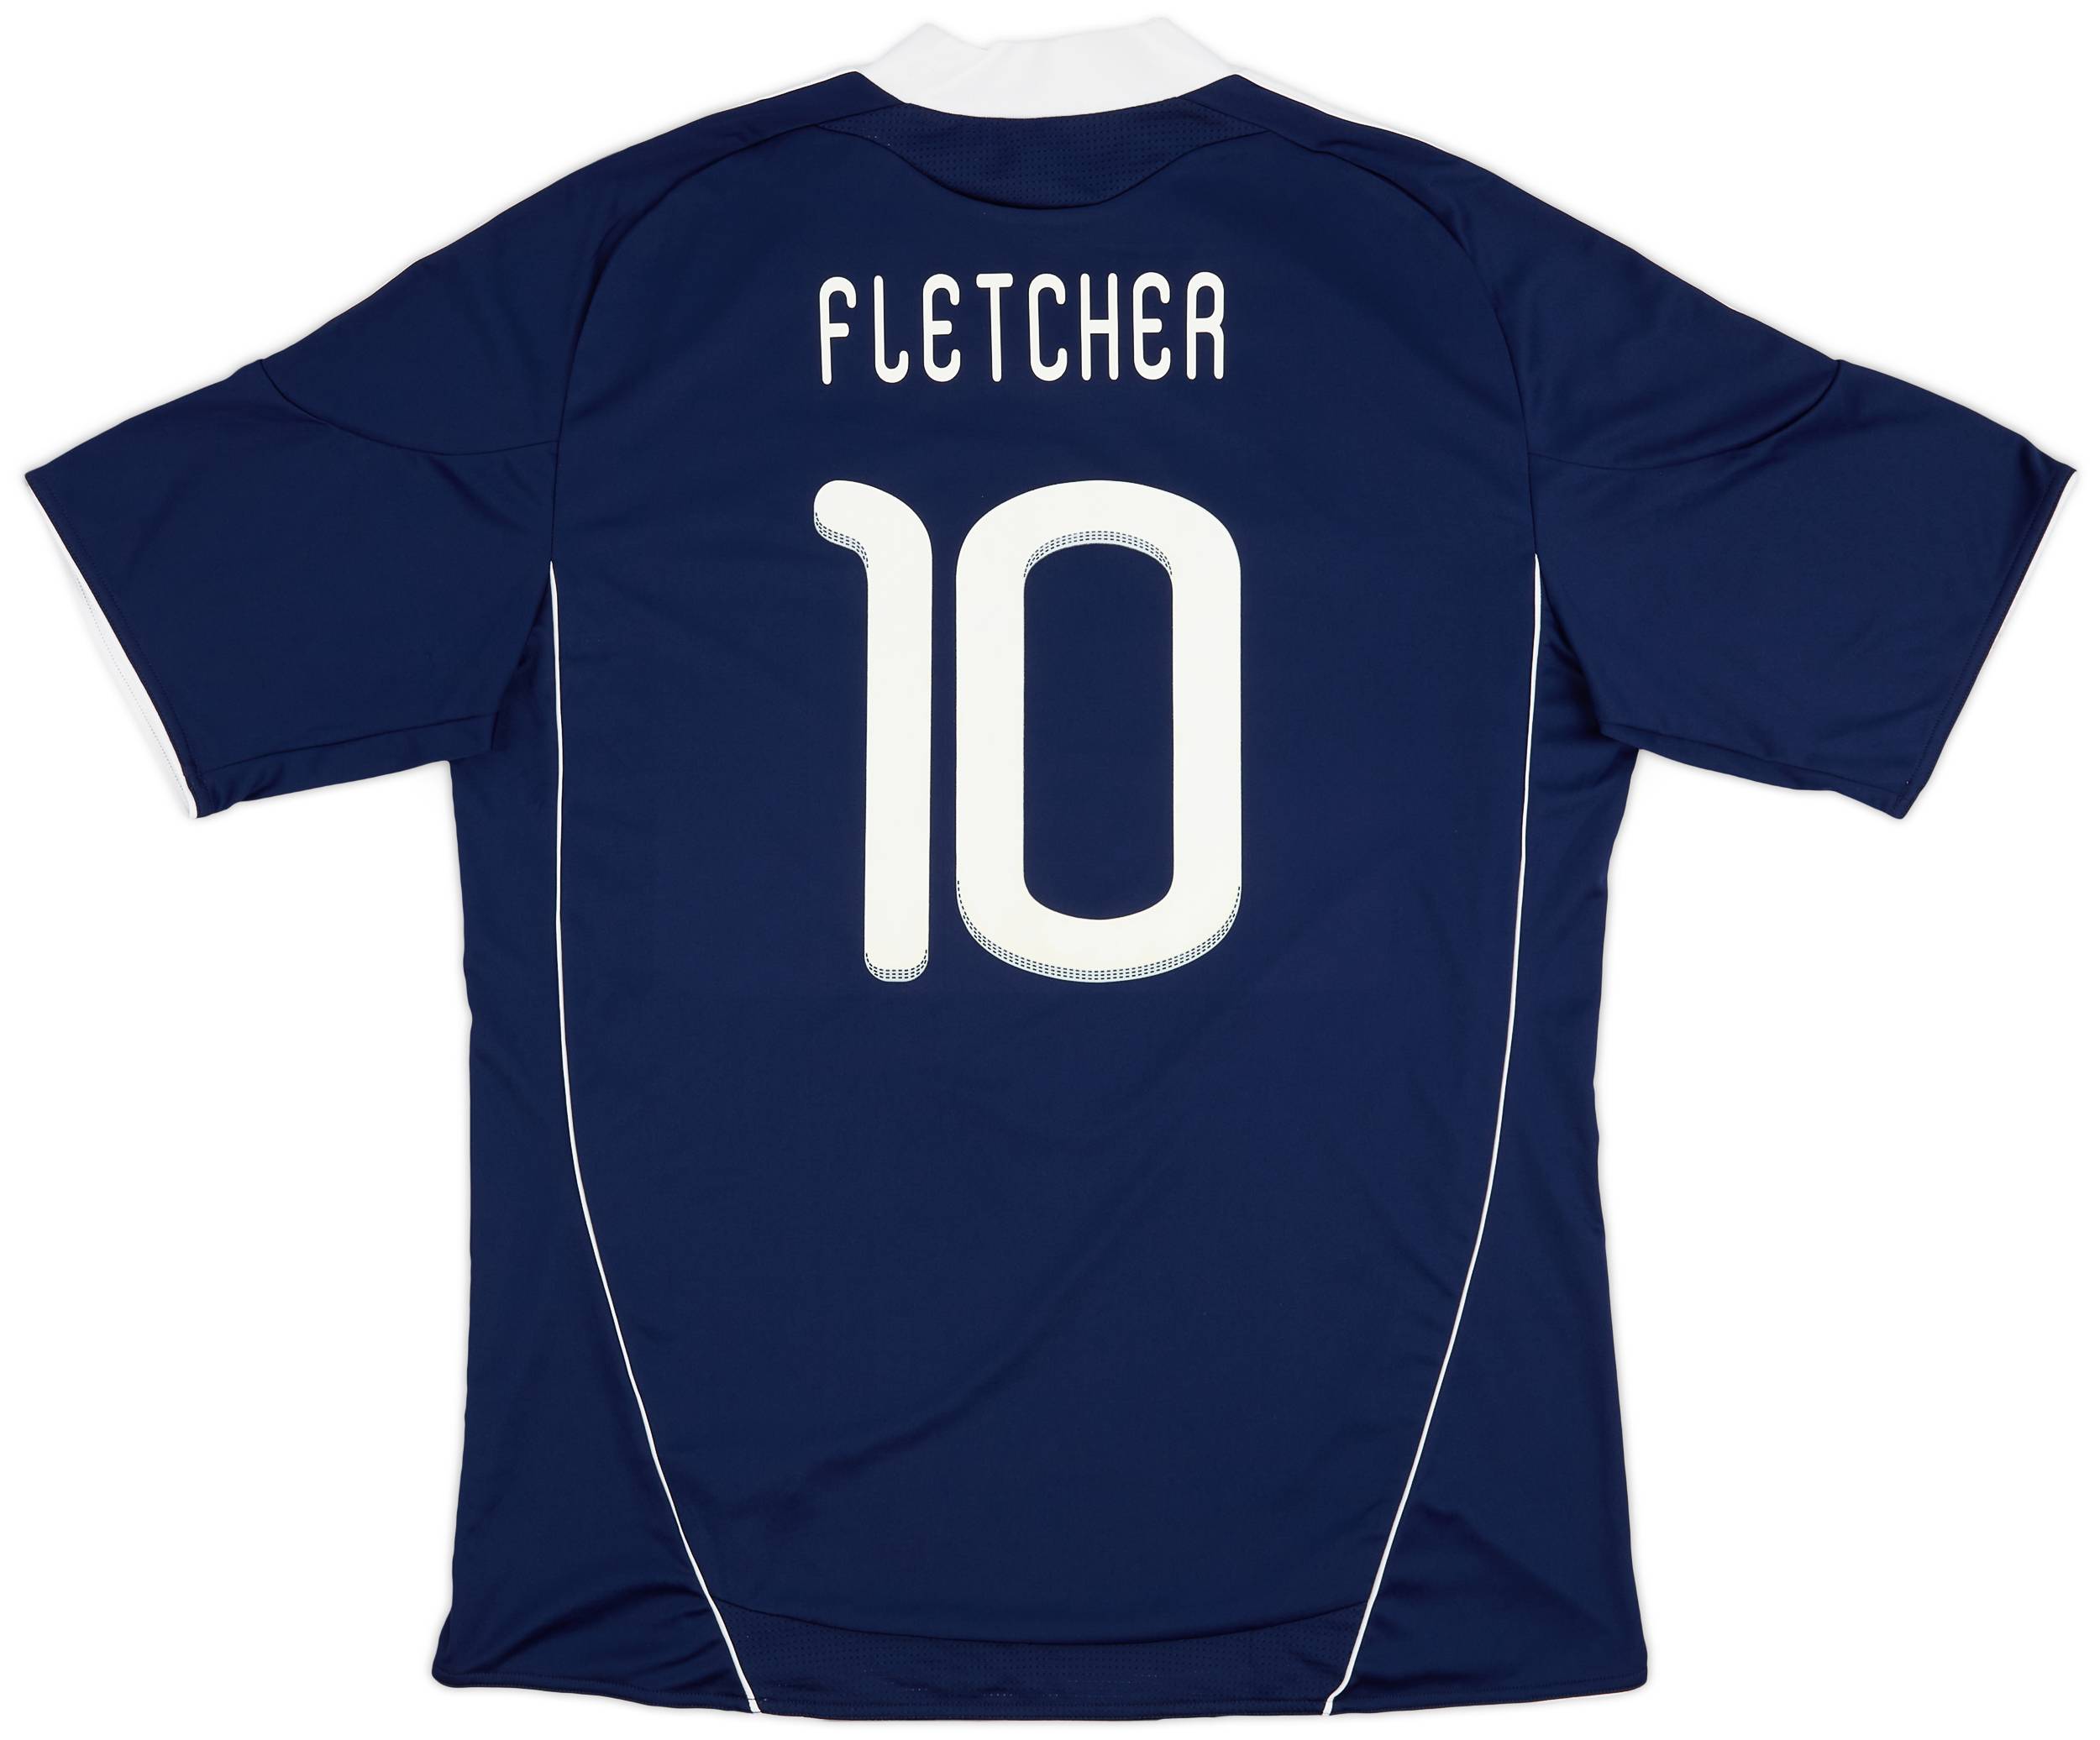 2010-11 Scotland Home Shirt Fletcher #10 - 8/10 - (XL)